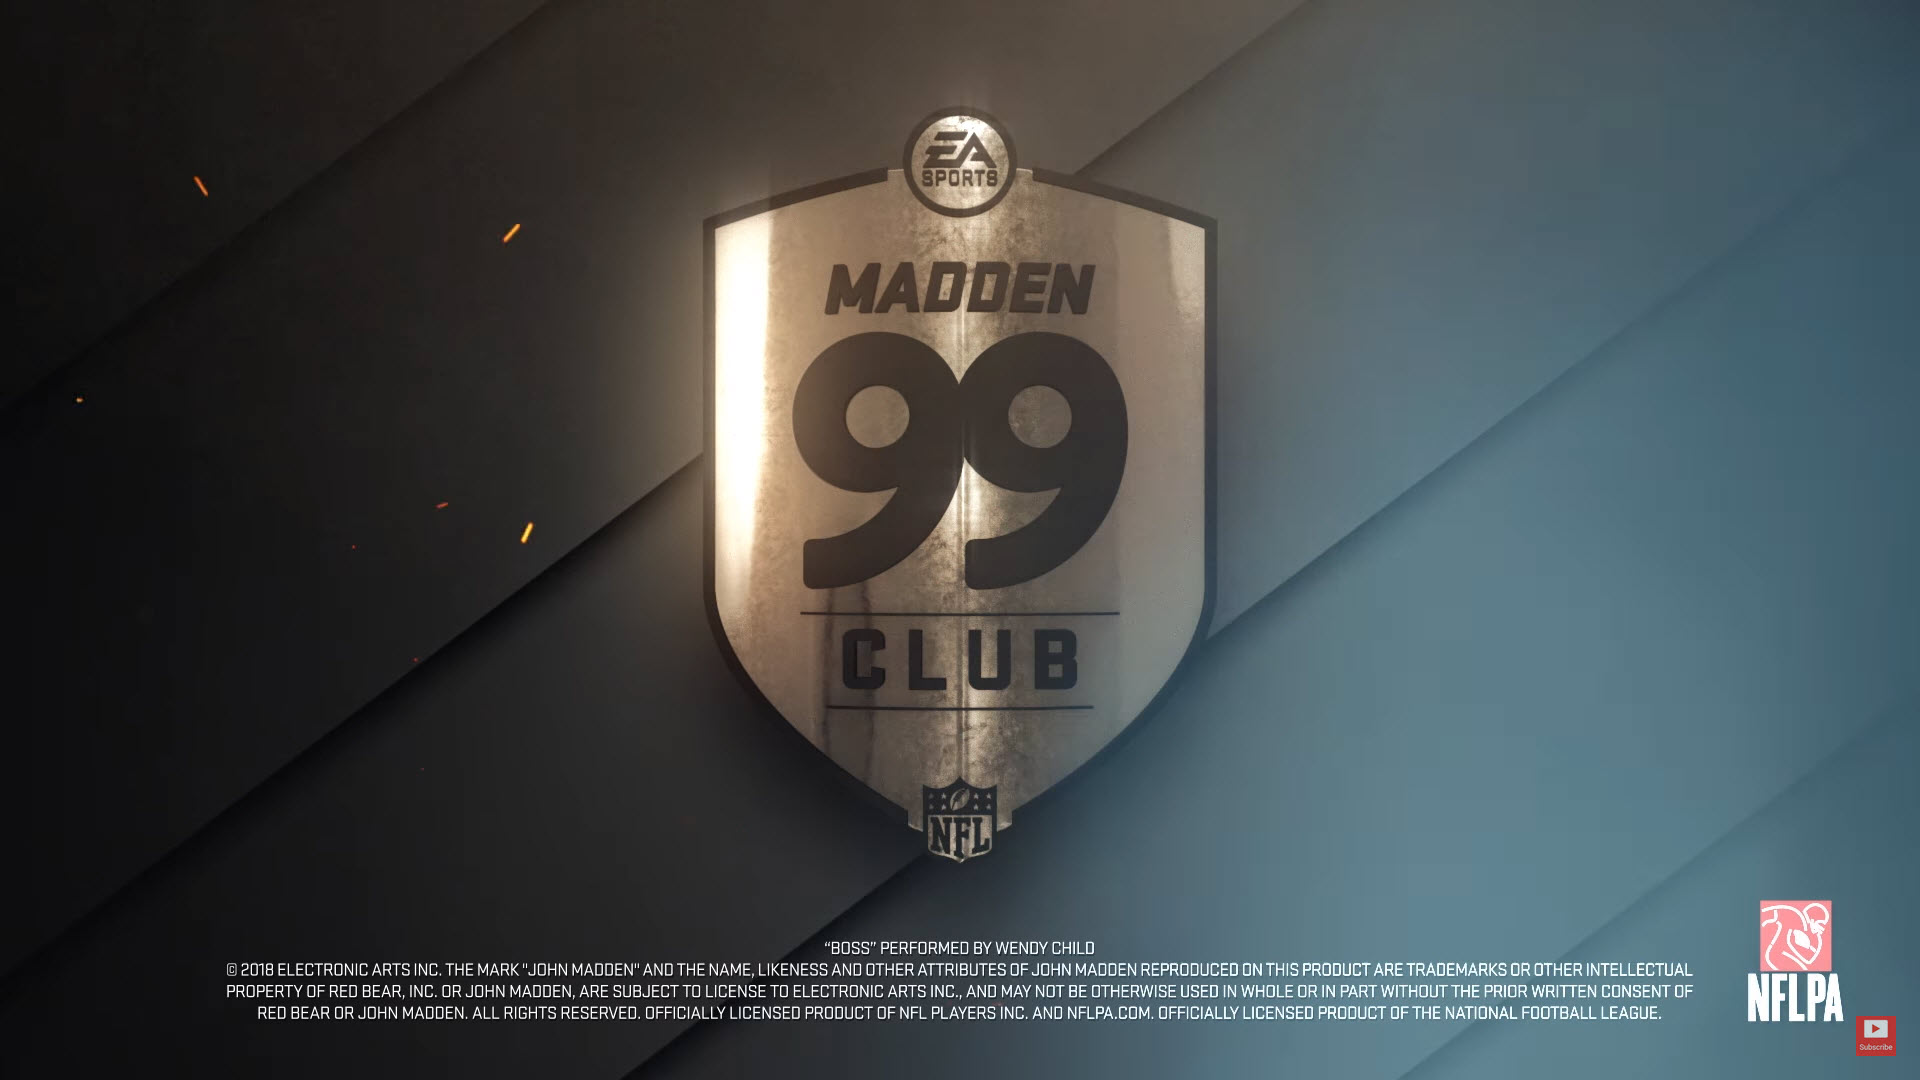 Madden 99 teaser trailer 2K Online Franchise